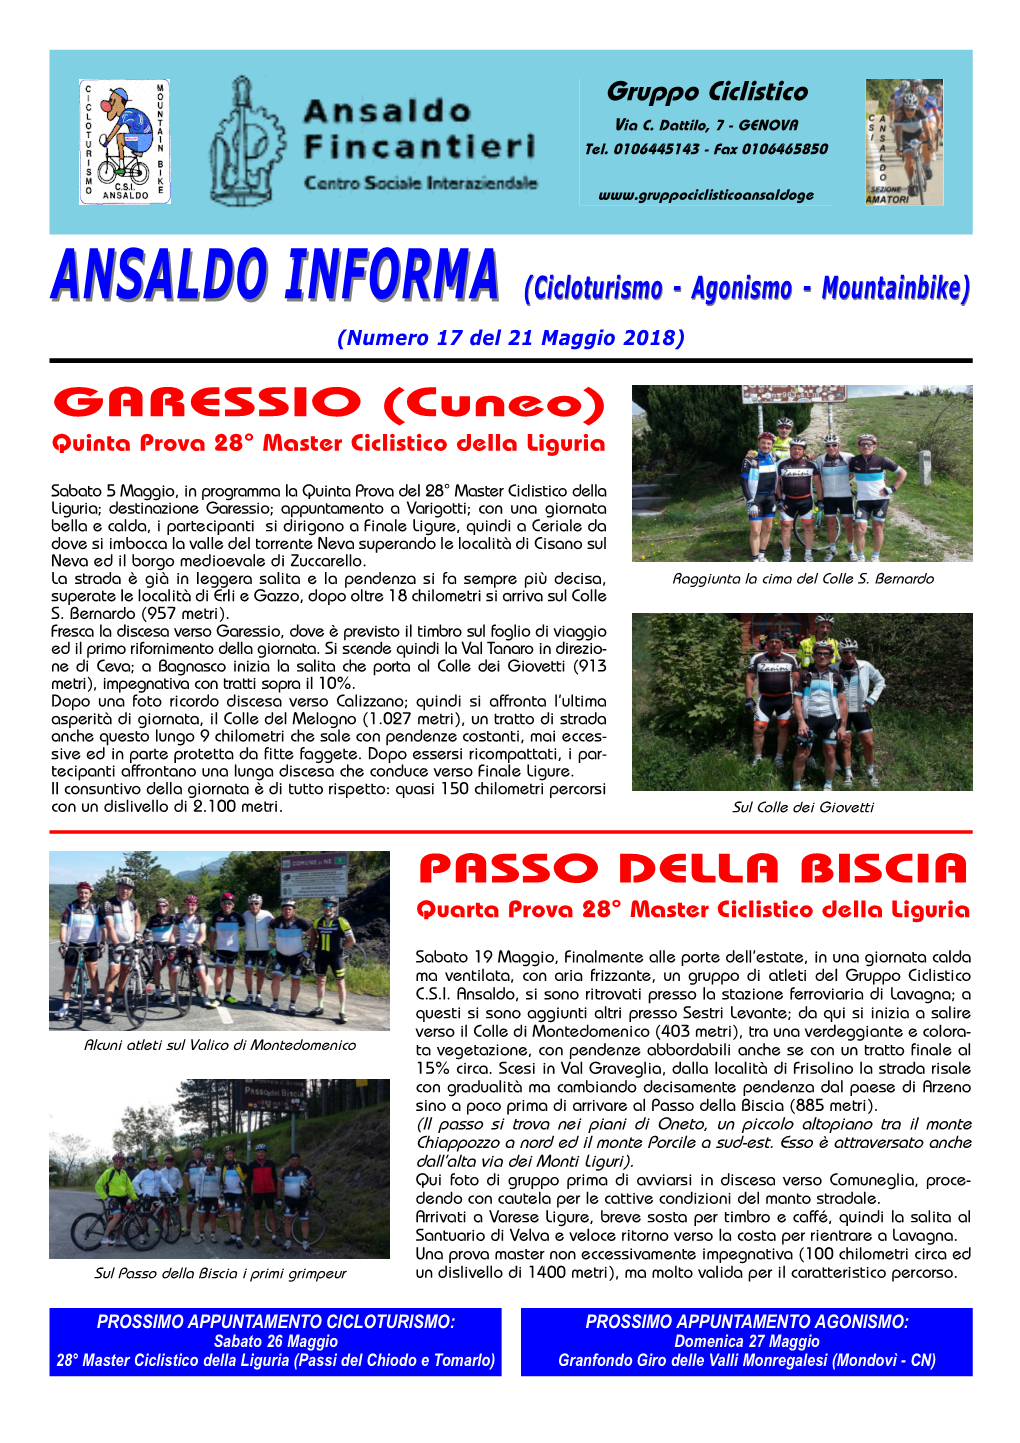 ANSALDO INFORMAINFORMA (Cicloturismo - Agonismo - Mountainbike) (Numero 17 Del 21 Maggio 2018) GARESSIO (Cuneo) Quinta Prova 28° Master Ciclistico Della Liguria